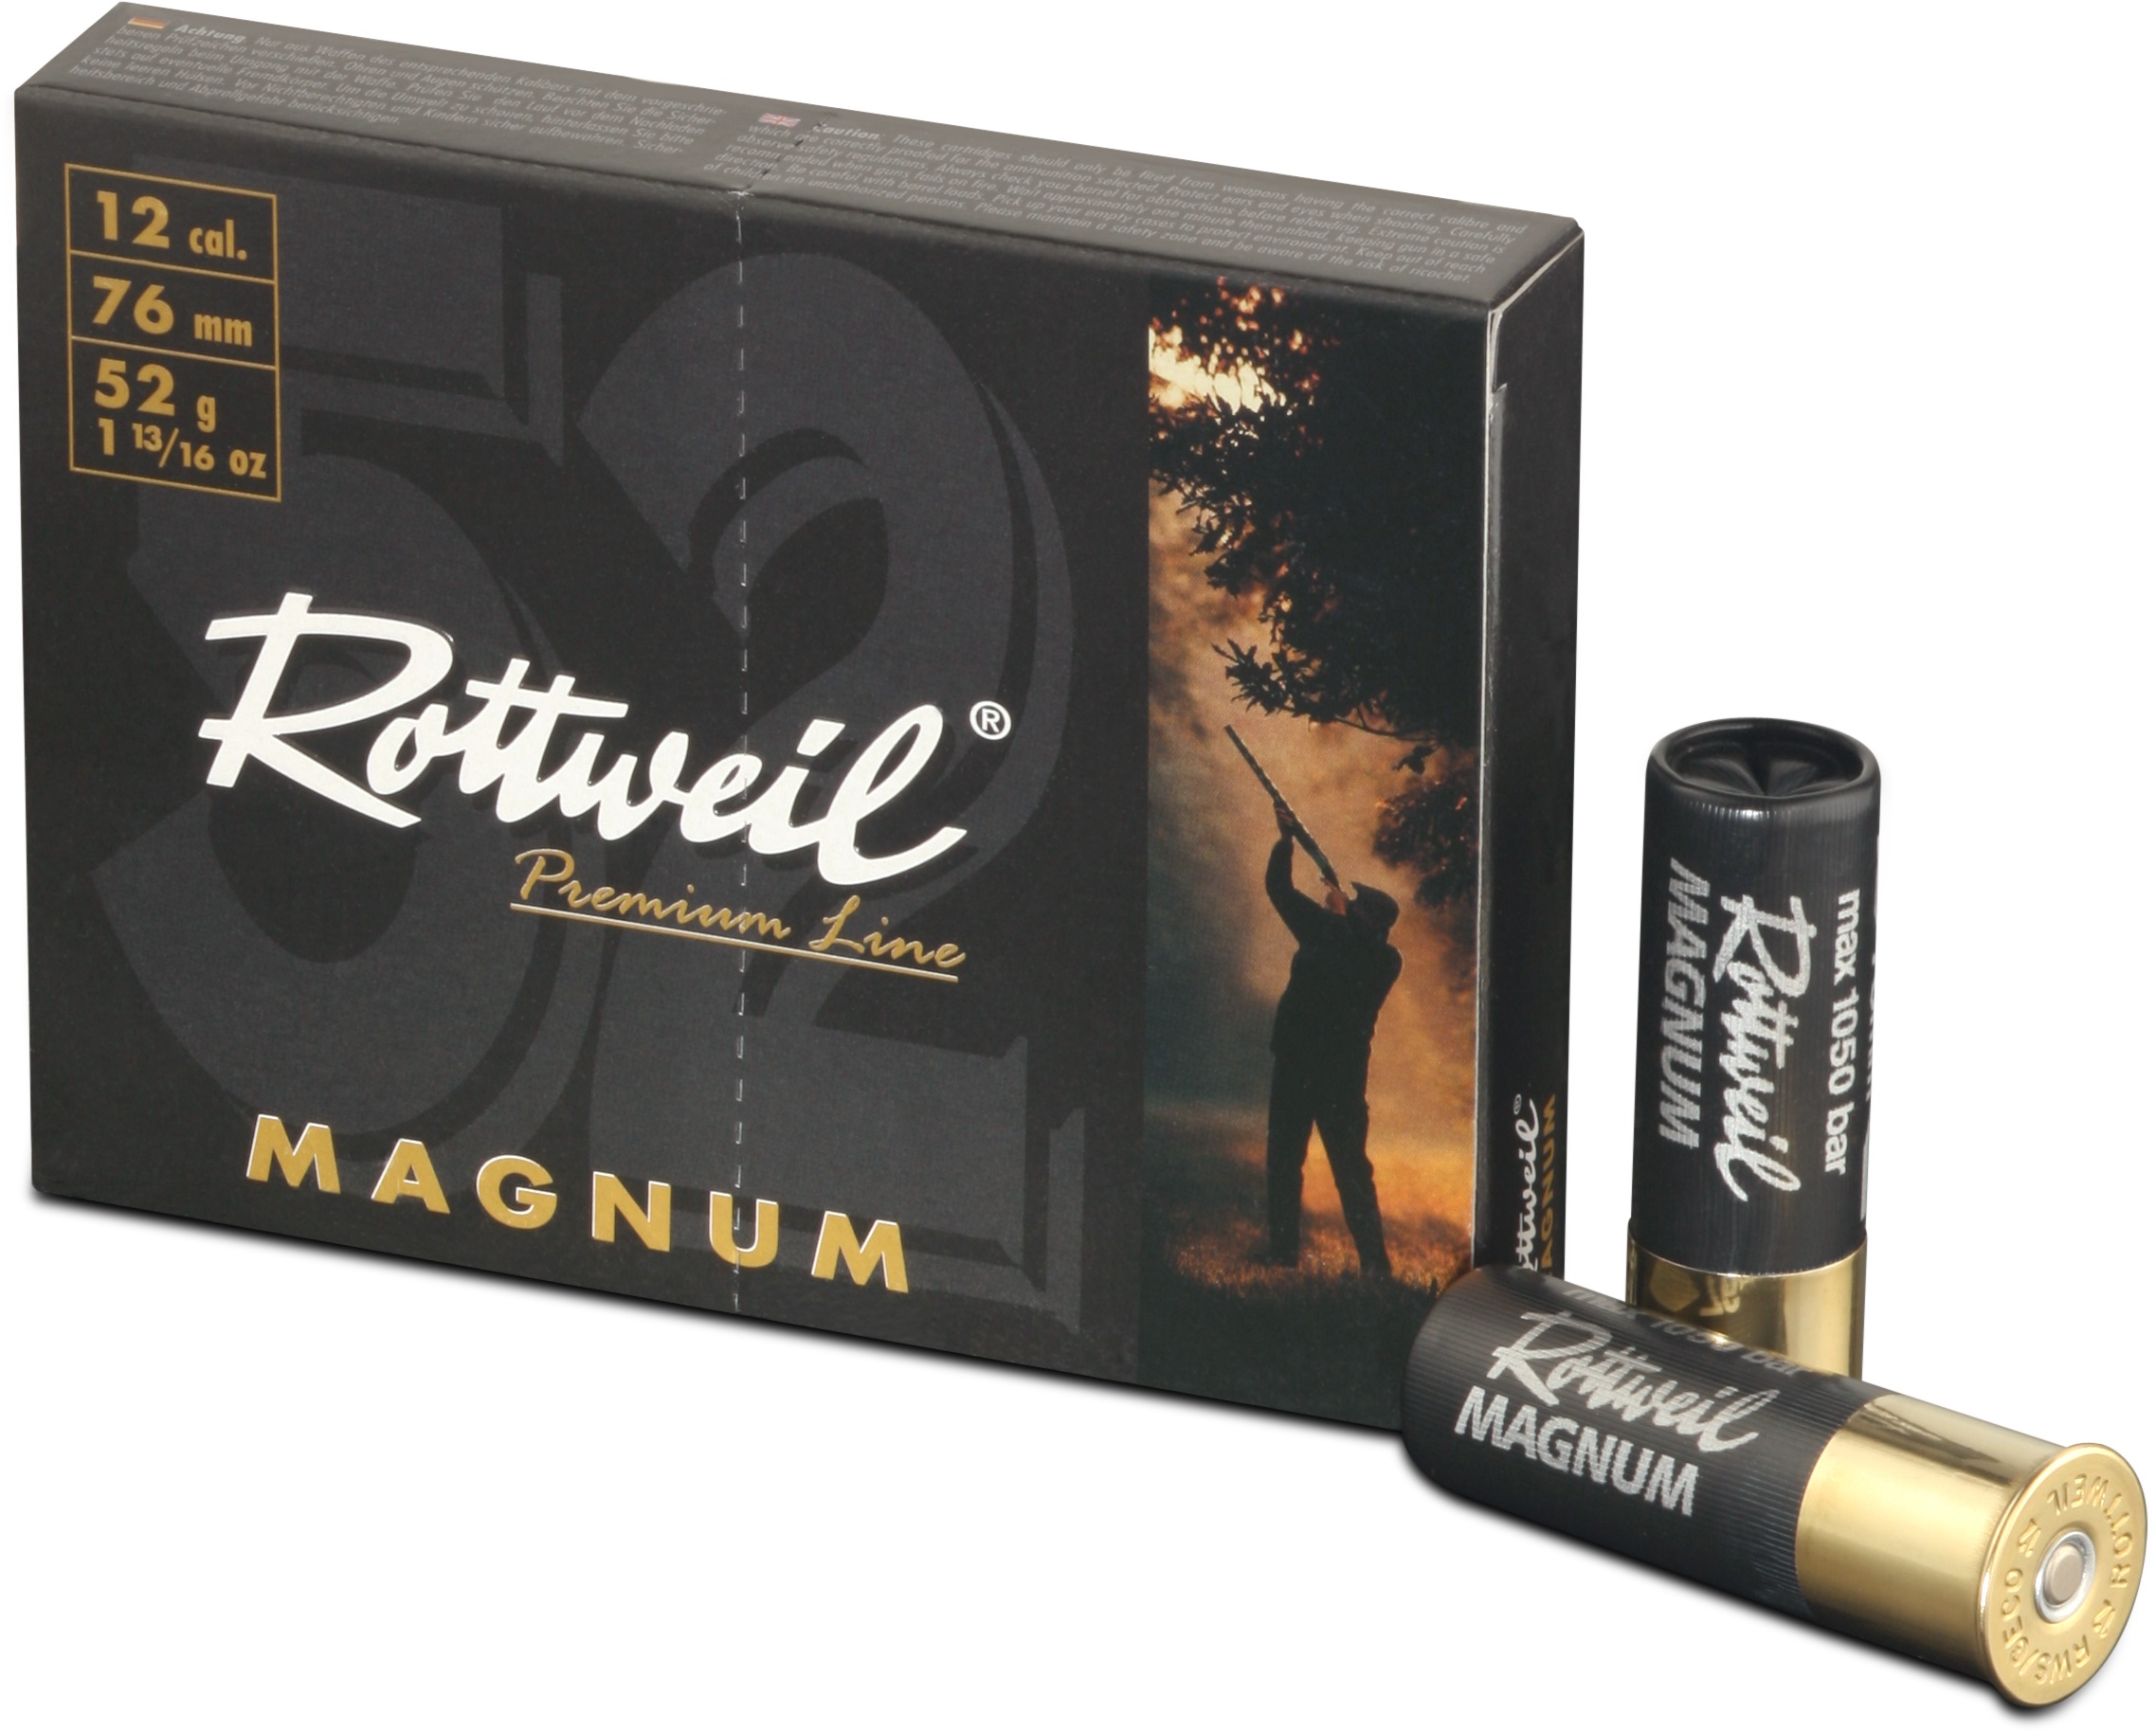 ROTTWEIL-Magnum 52 20/76 3,2mm Plastik, 10er Pack.